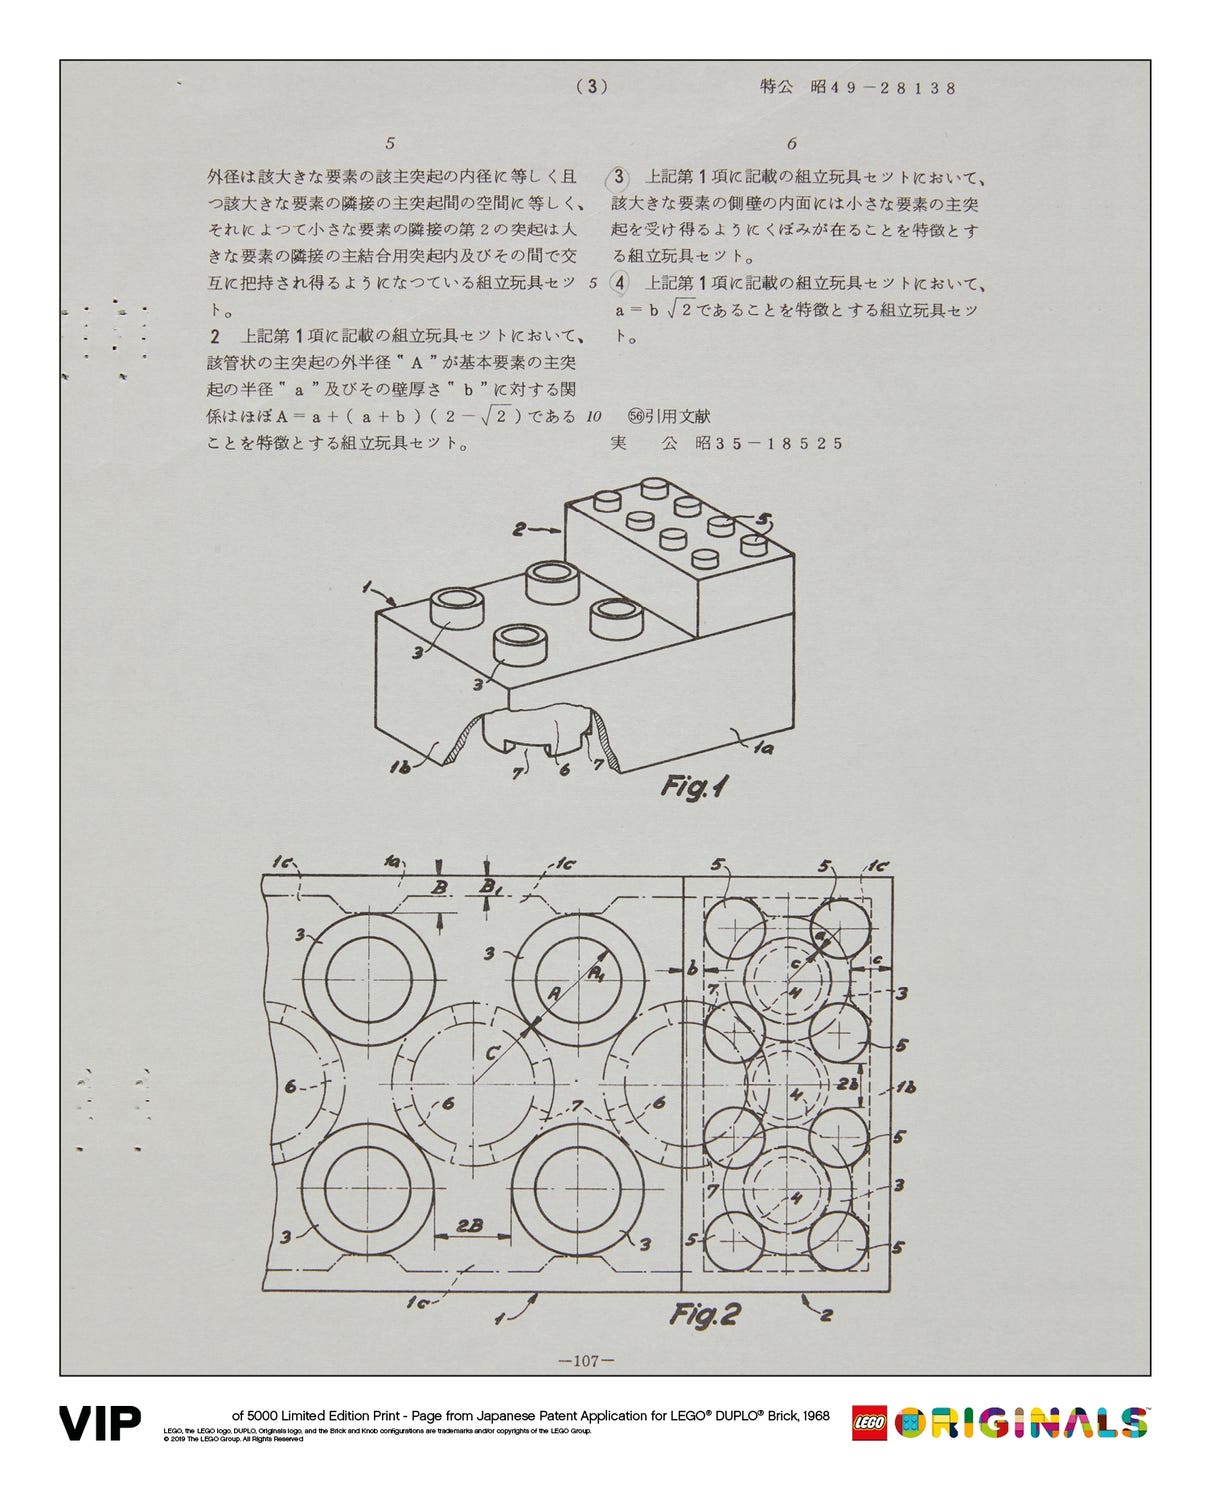 Japanese Patent LEGO DUPLO Brick 1968